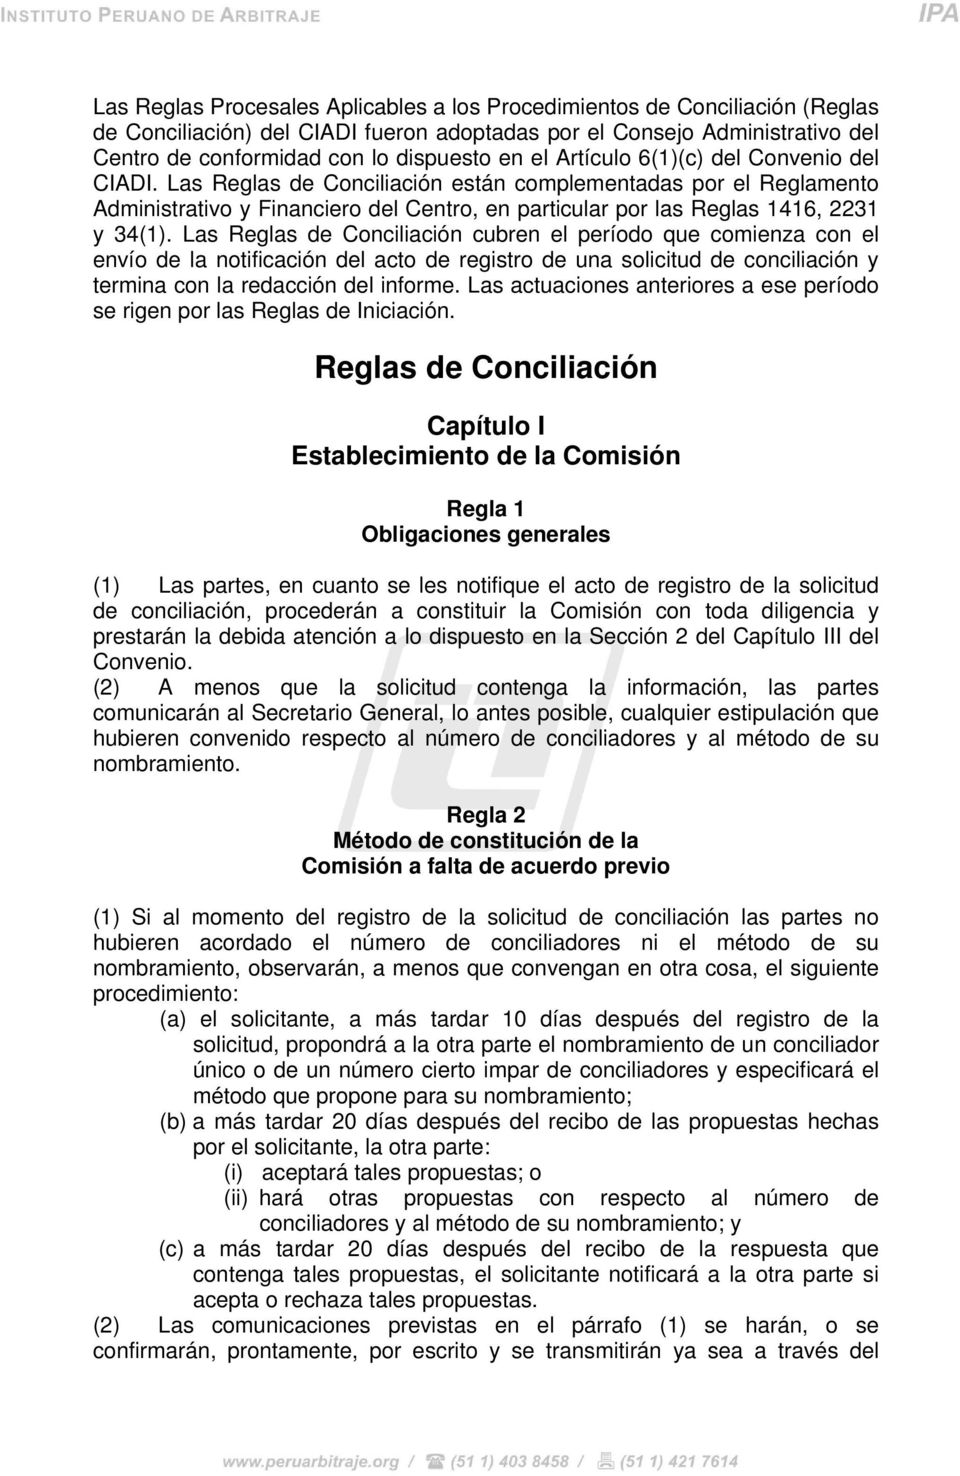 Las Reglas de Conciliación cubren el período que comienza con el envío de la notificación del acto de registro de una solicitud de conciliación y termina con la redacción del informe.